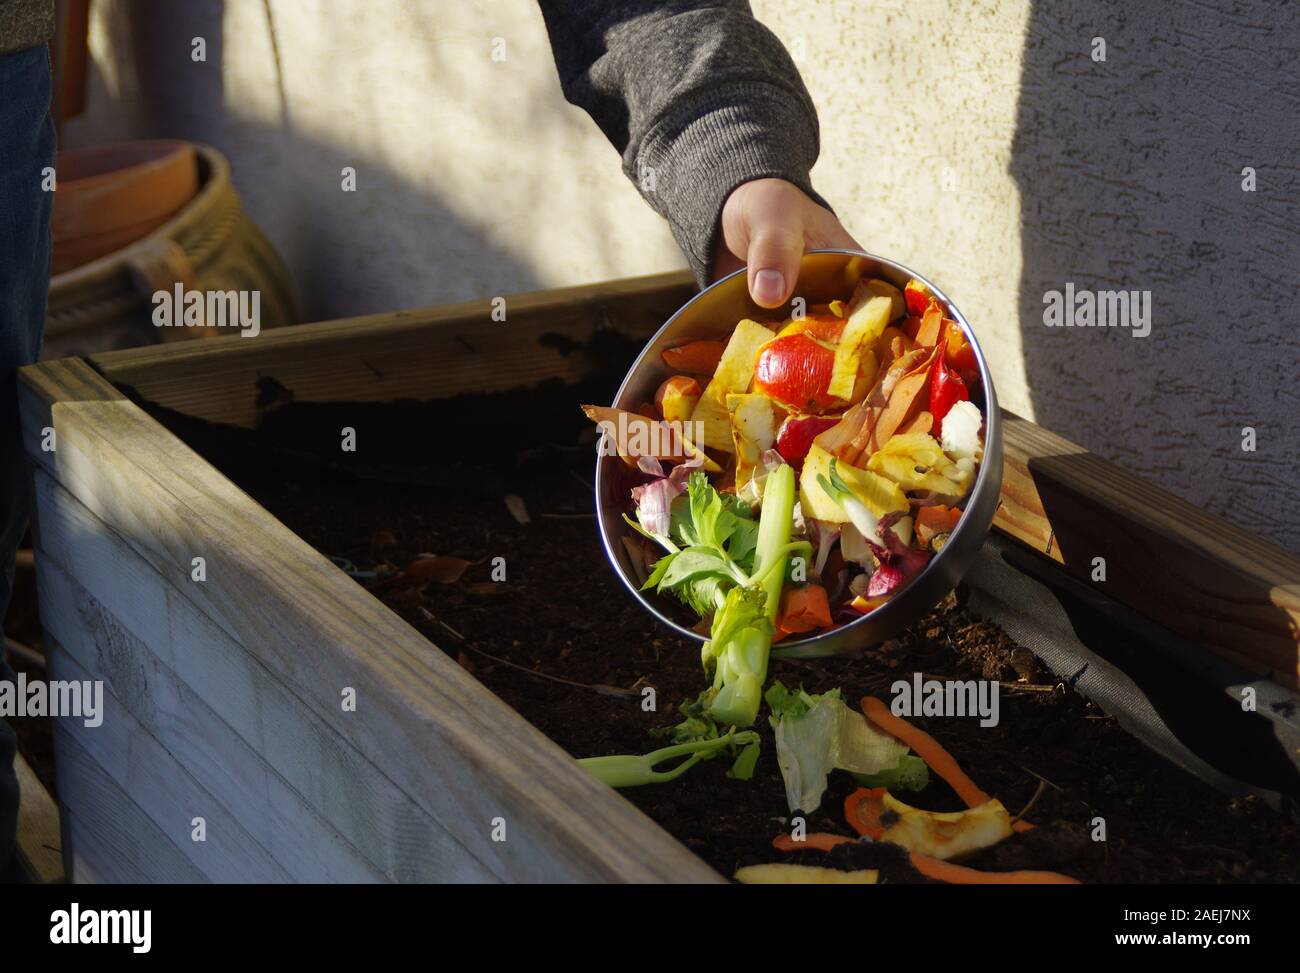 Ökologie Kompost versorgen - Küche das Recycling von Abfällen im Hinterhof Komposter. Umweltfreundlichen Lebensstil. Der Mann wirft übrig gebliebene Gemüse aus. Stockfoto